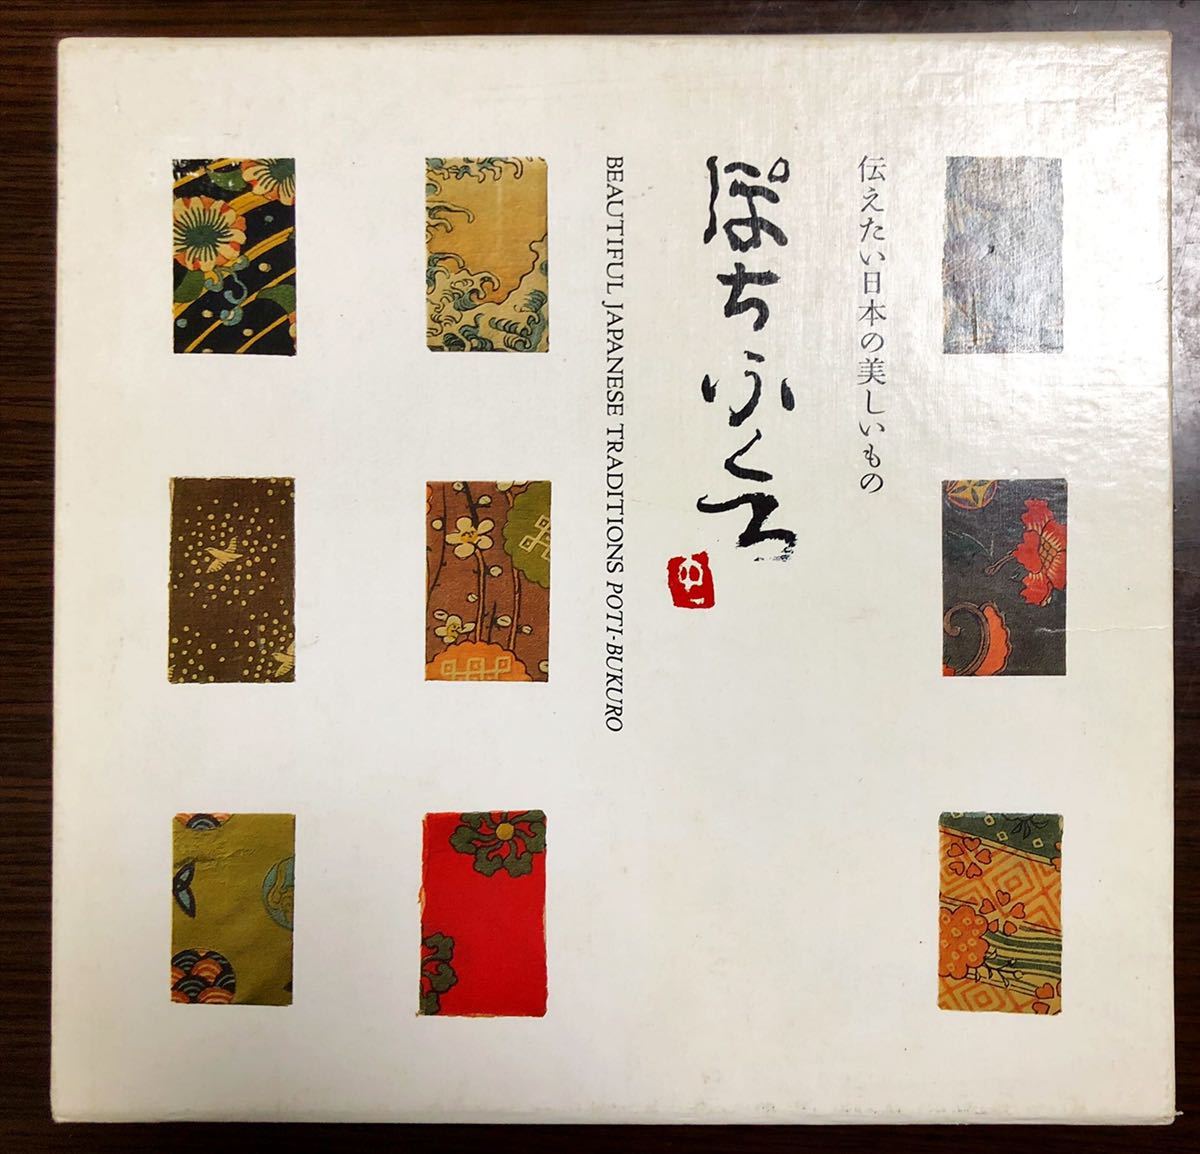 超激得SALE 貴道裕子の伝えたい日本の美しいもの まめざら ぽちぶくろ おびどめ 3冊+箱